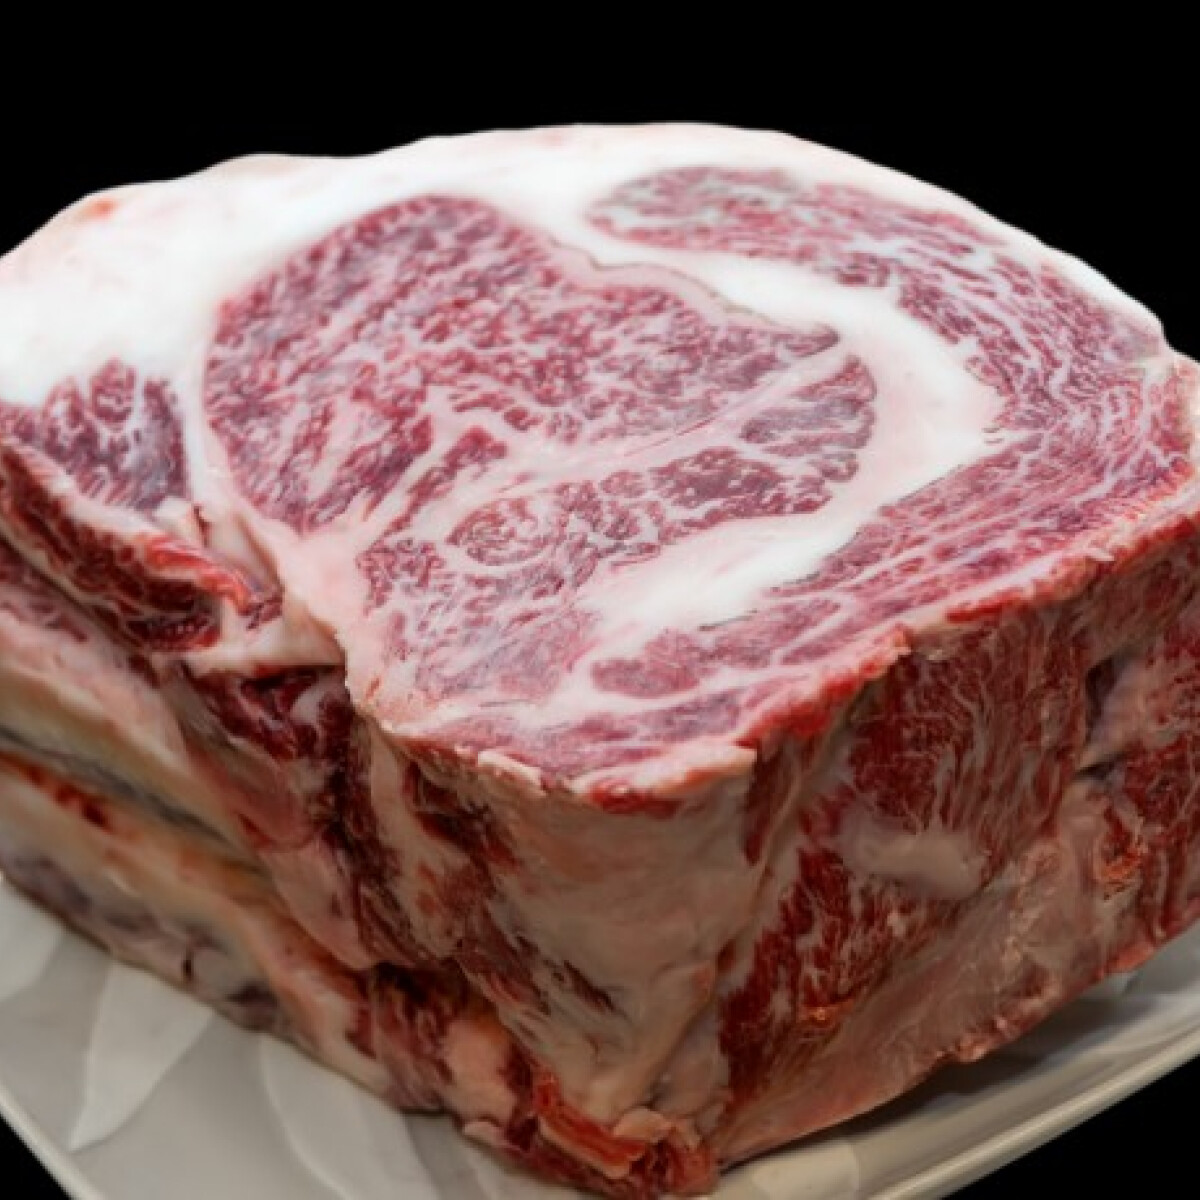 Wagyu, a világ legdrágább marhahúsa, amiből 1 kg annyiba kerül, mint amennyit egy hónap alatt keresel